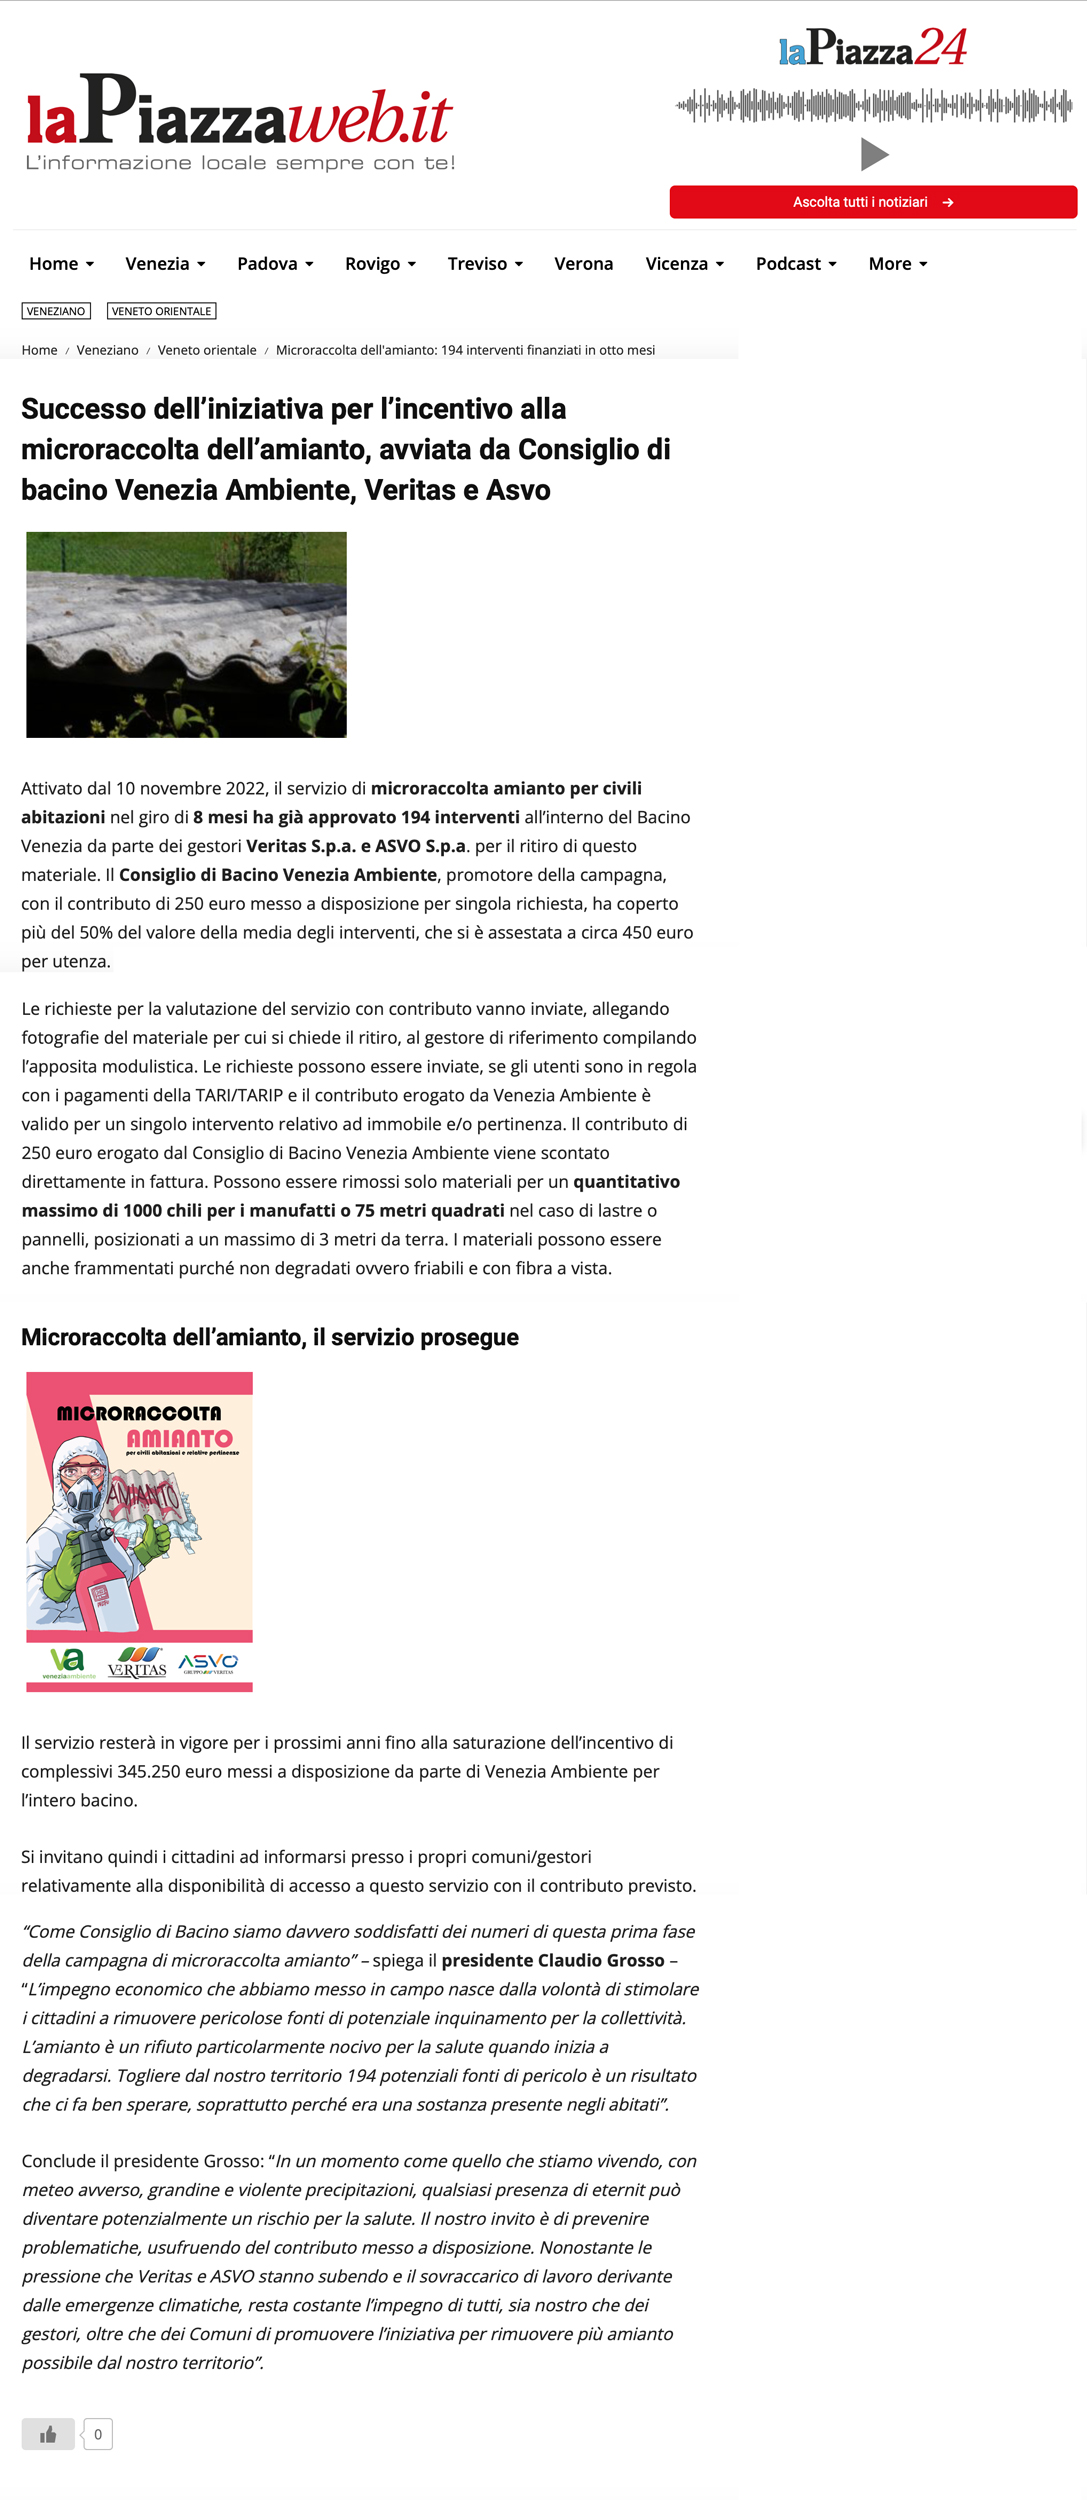 successo-microraccolta-amianto-consiglio-di-bacino-venezia-ambiente